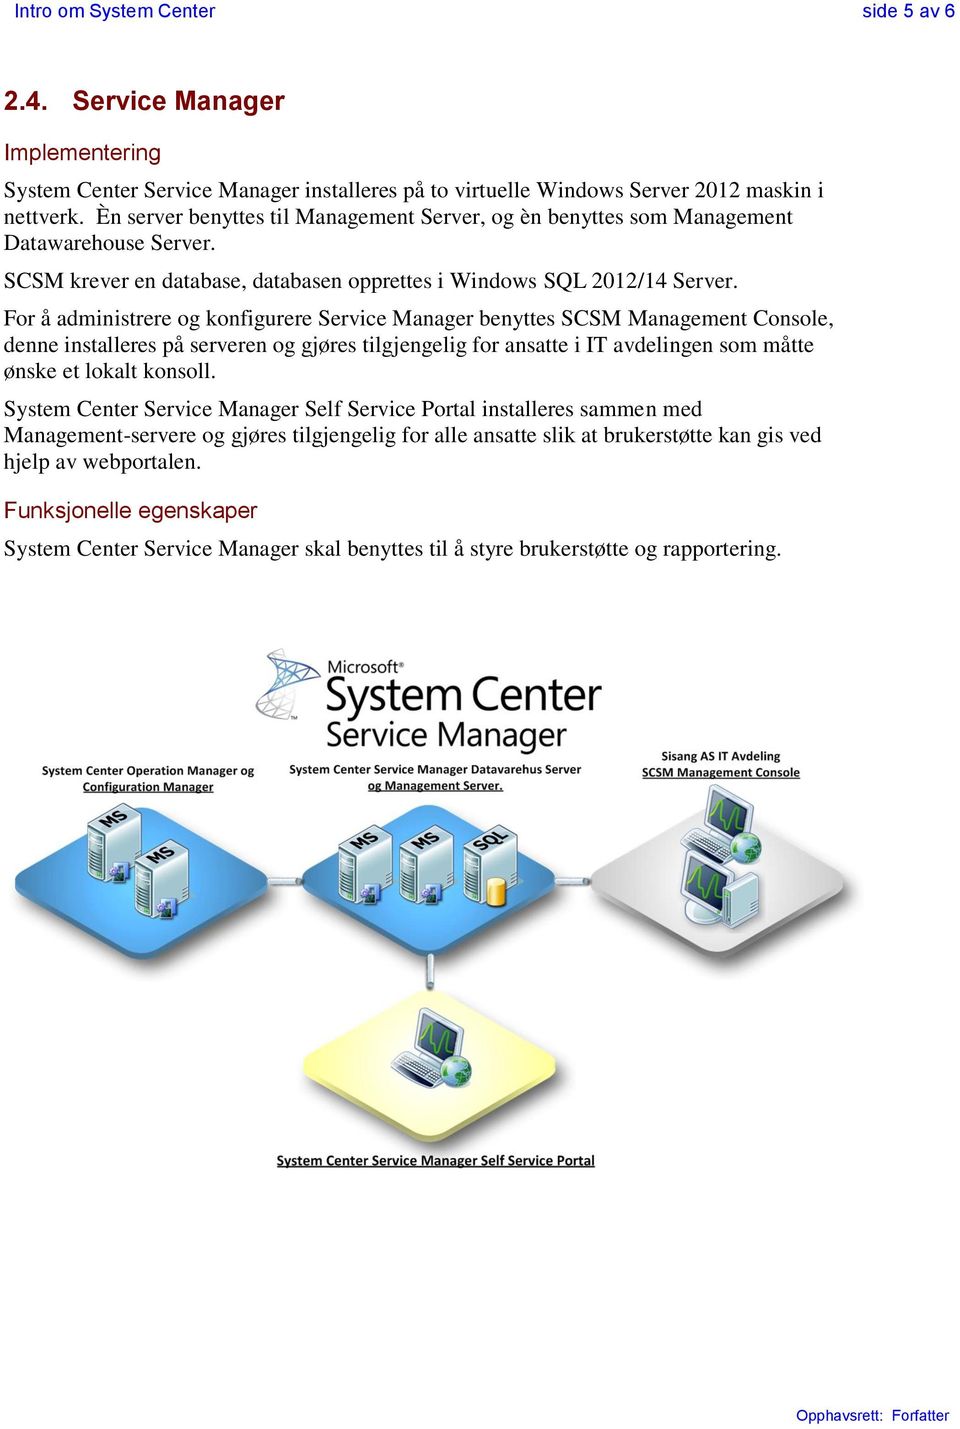 For å administrere og konfigurere Service Manager benyttes SCSM Management Console, denne installeres på serveren og gjøres tilgjengelig for ansatte i IT avdelingen som måtte ønske et lokalt konsoll.